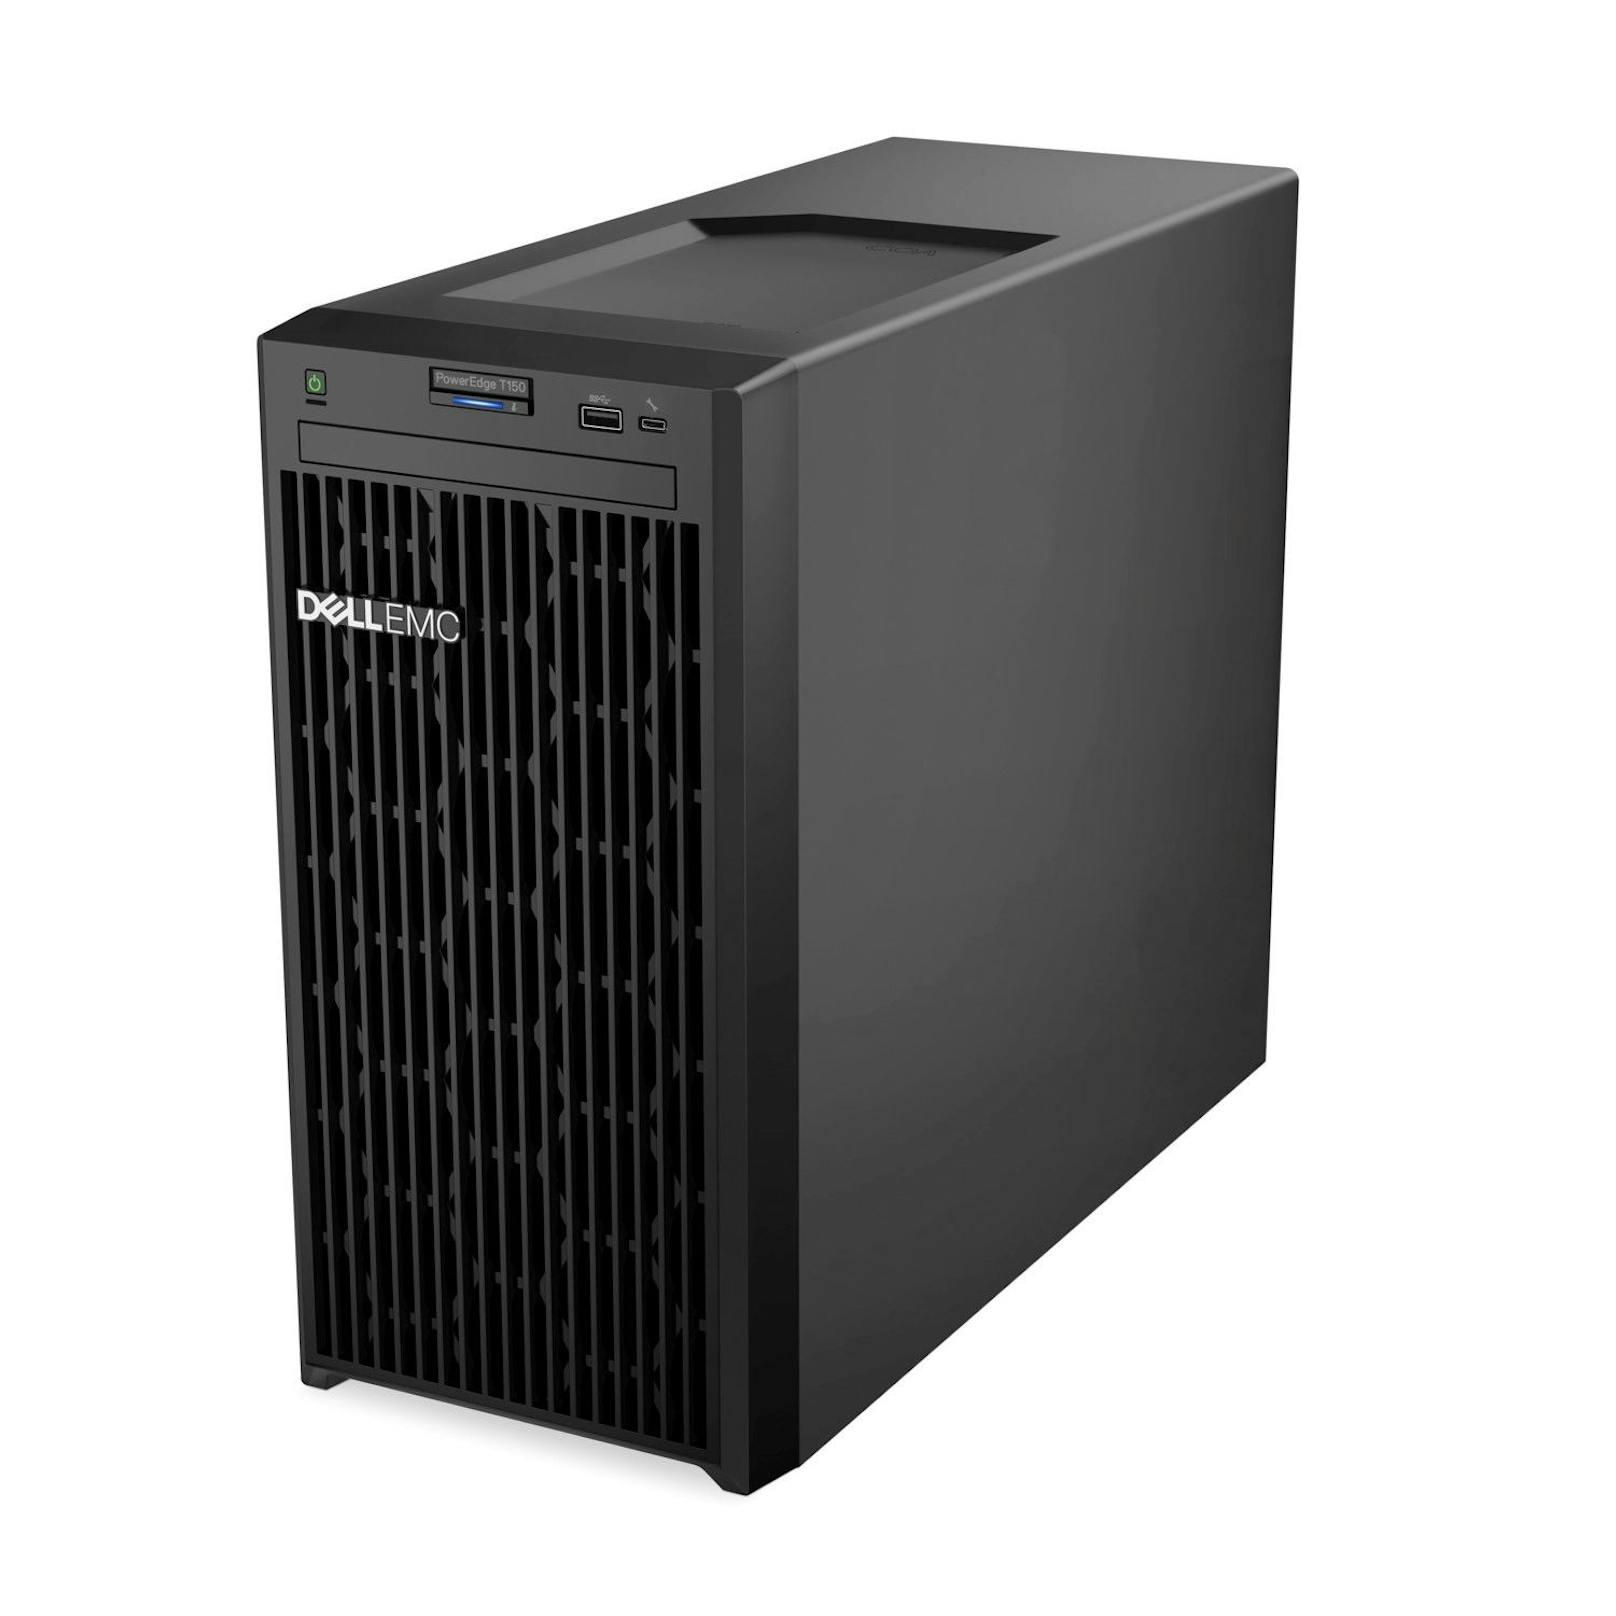 Turbo fürs Rechenzentrum: Dell Technologies präsentiert neue PowerEdge-Server für Einstiegsbereich.